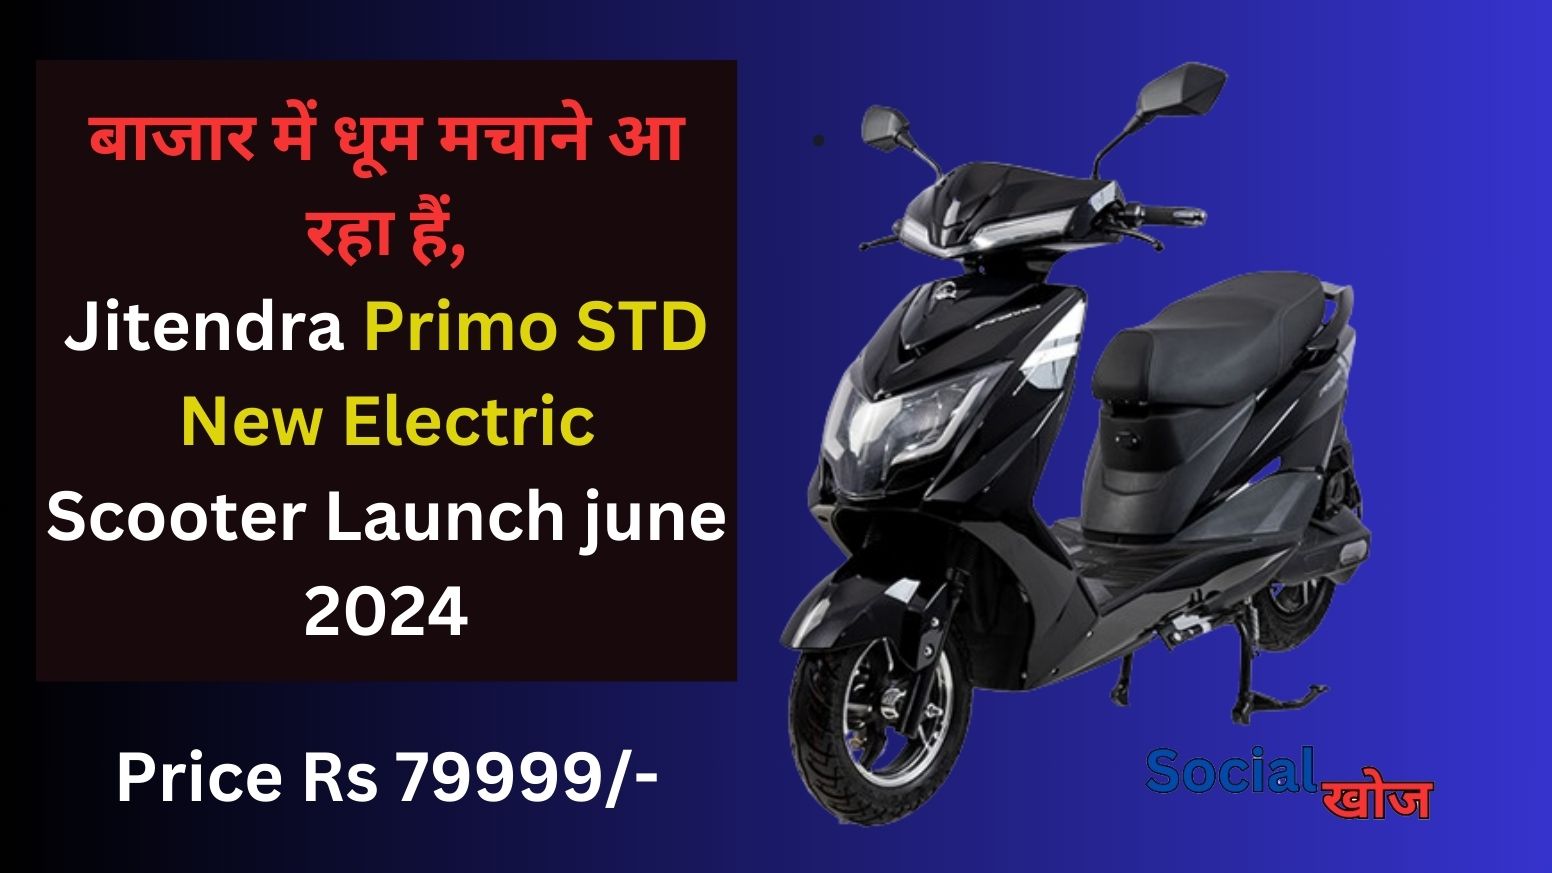 बाजार में धूम मचाने आ रहा हैं,Jitendra Primo STD का New Electric Scooter Launch june 2024